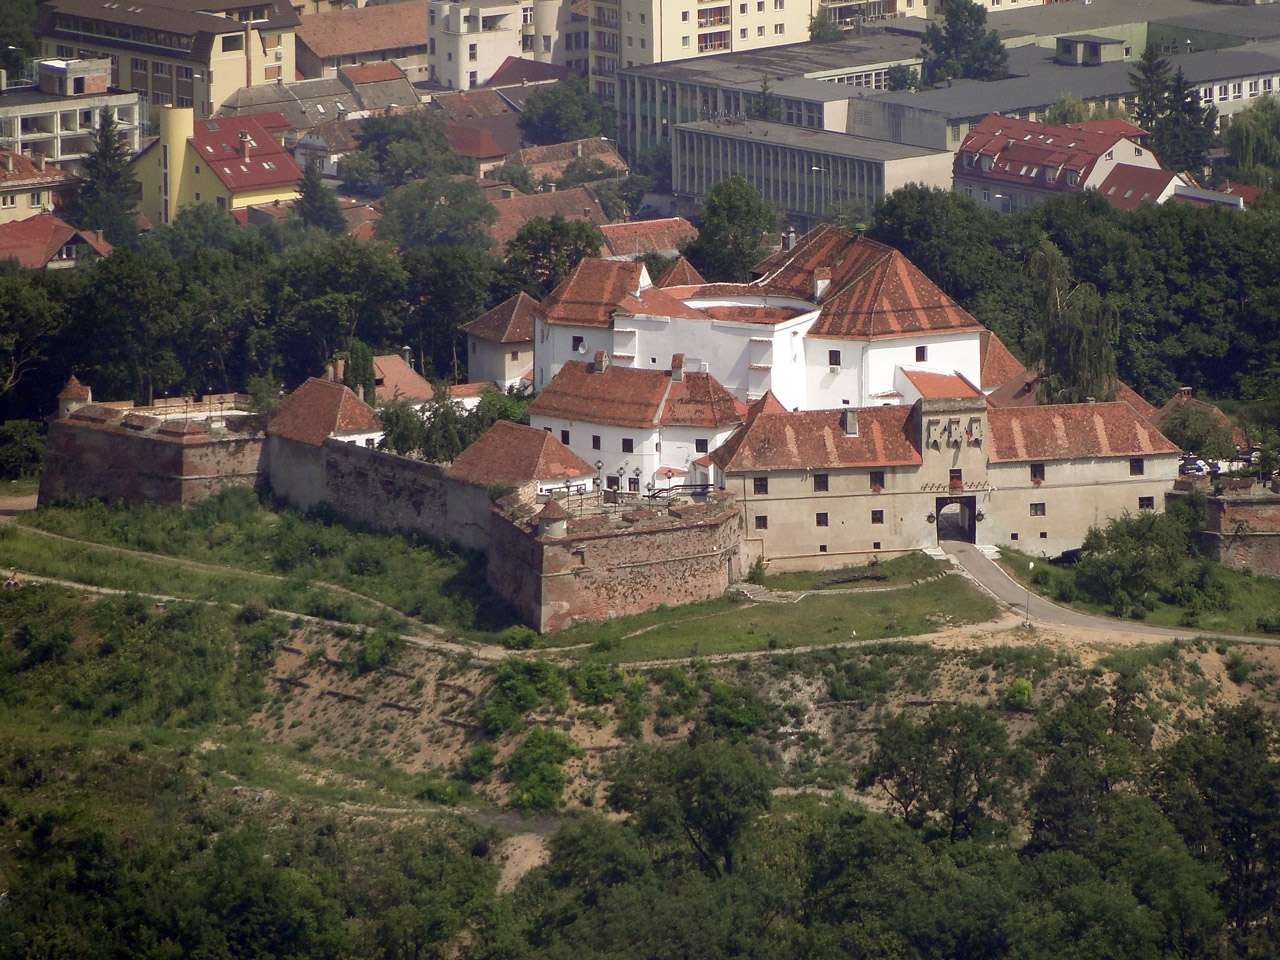 4. Cetatea Brasovului (Brasov)